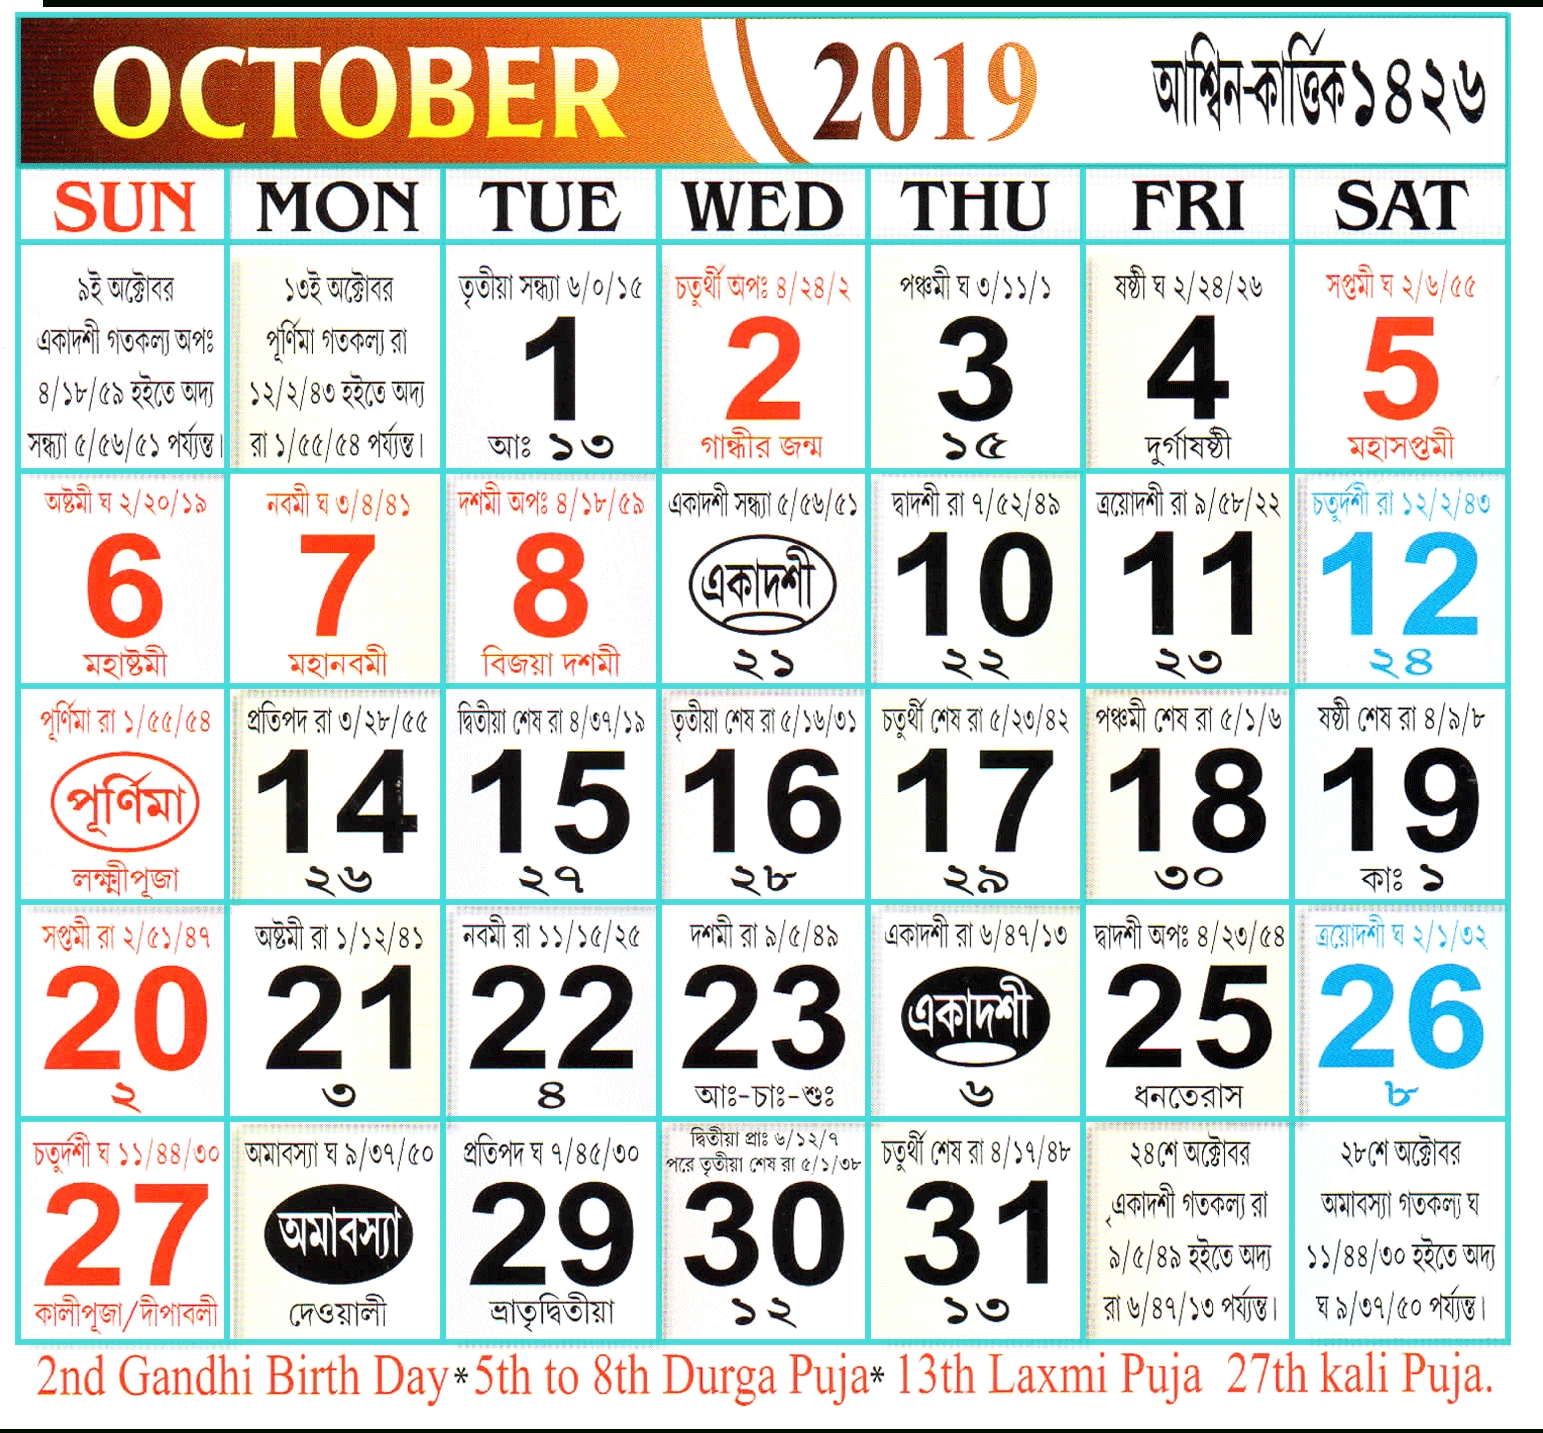 Bengali Calendar 2019 October | Odishain with Bangla Calendar Of 2015 Of October